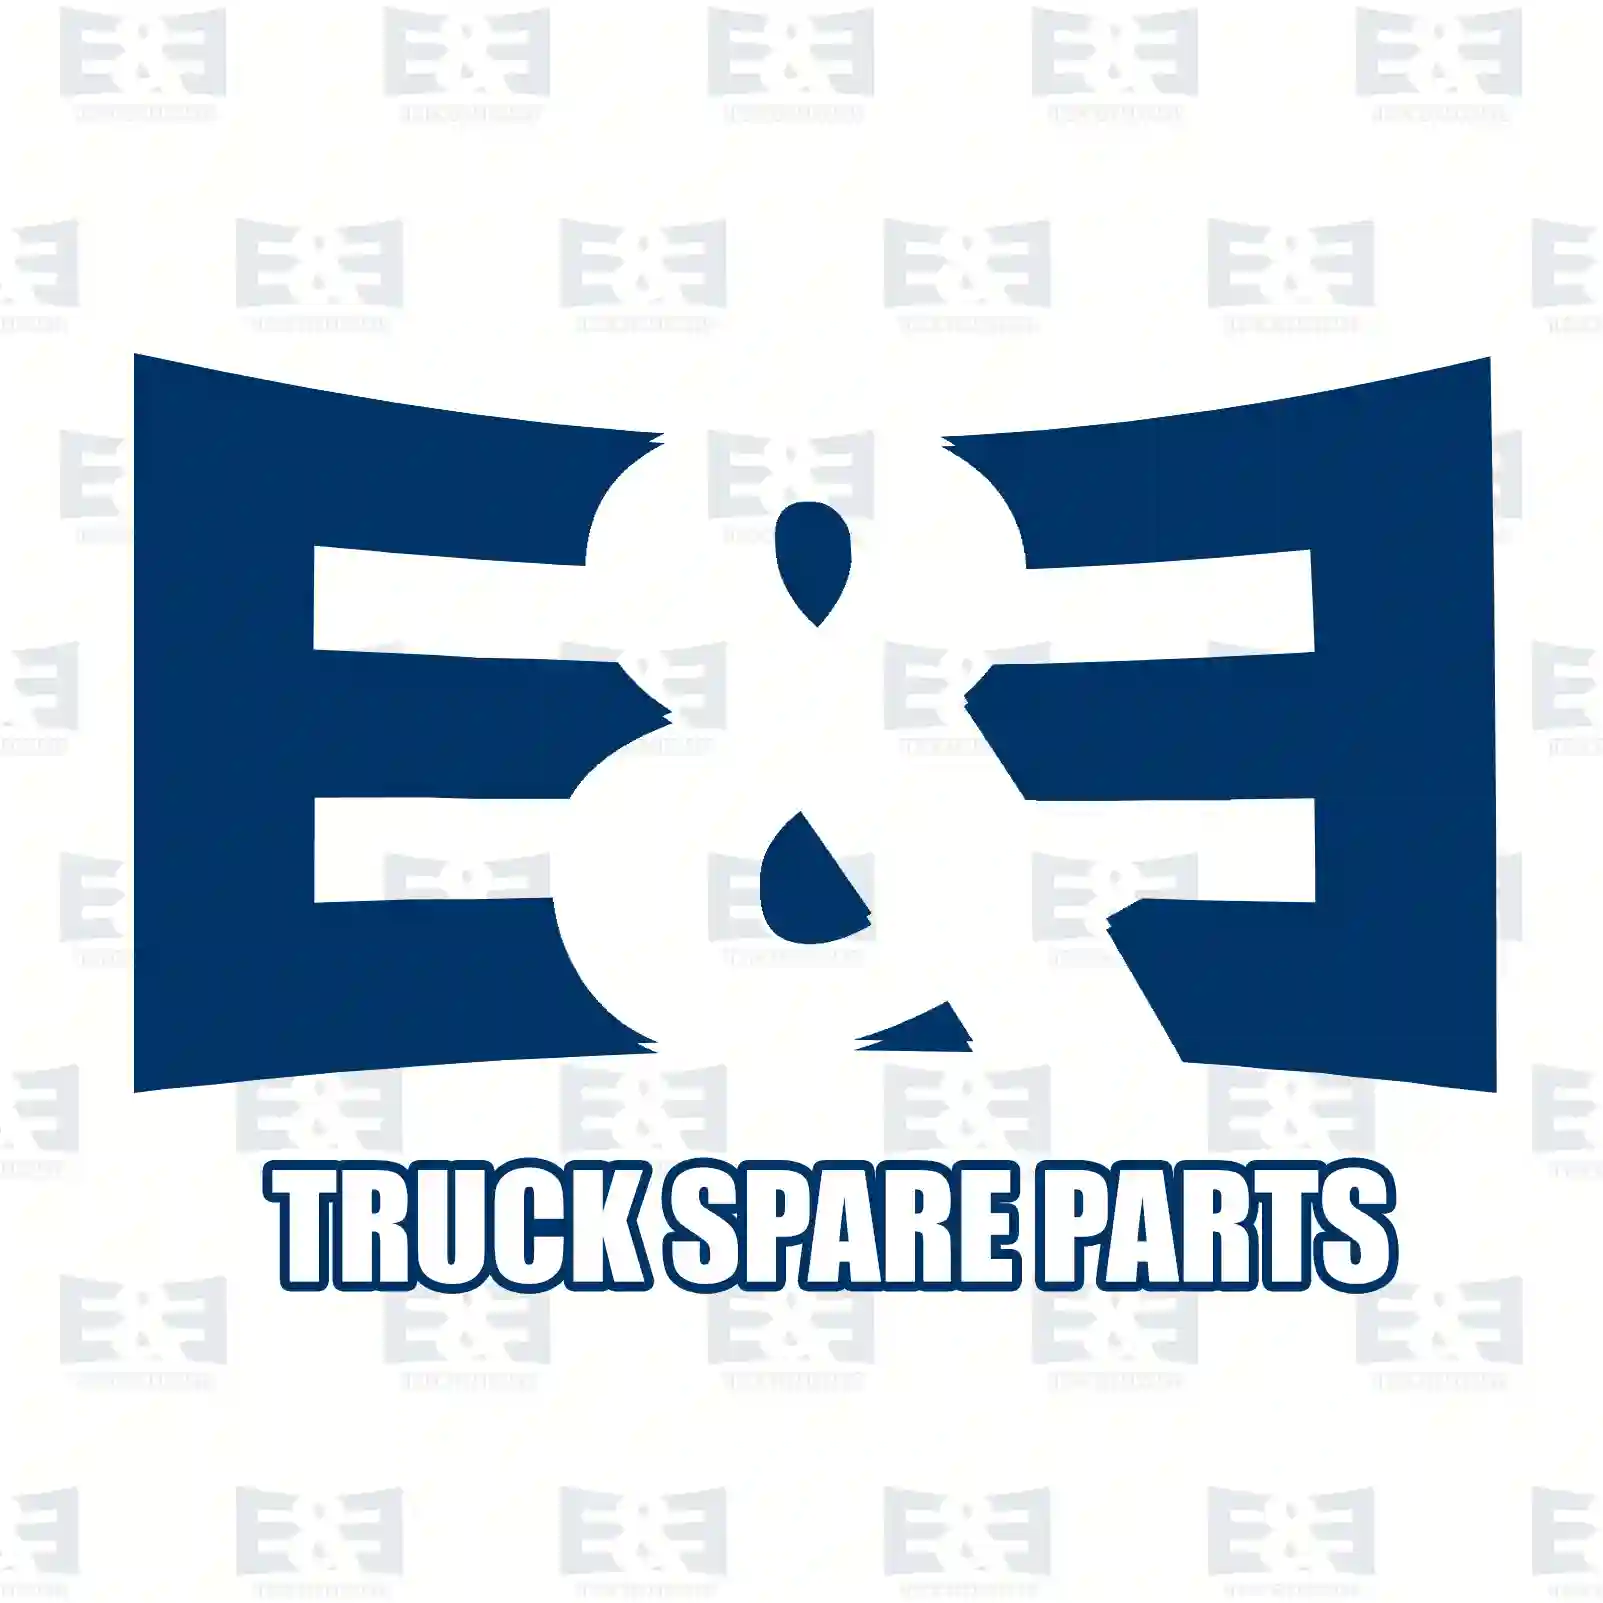 Fan clutch, 2E2201285, 1776551S1, 1849914S1, 1914177S1, 2035611S1 ||  2E2201285 E&E Truck Spare Parts | Truck Spare Parts, Auotomotive Spare Parts Fan clutch, 2E2201285, 1776551S1, 1849914S1, 1914177S1, 2035611S1 ||  2E2201285 E&E Truck Spare Parts | Truck Spare Parts, Auotomotive Spare Parts